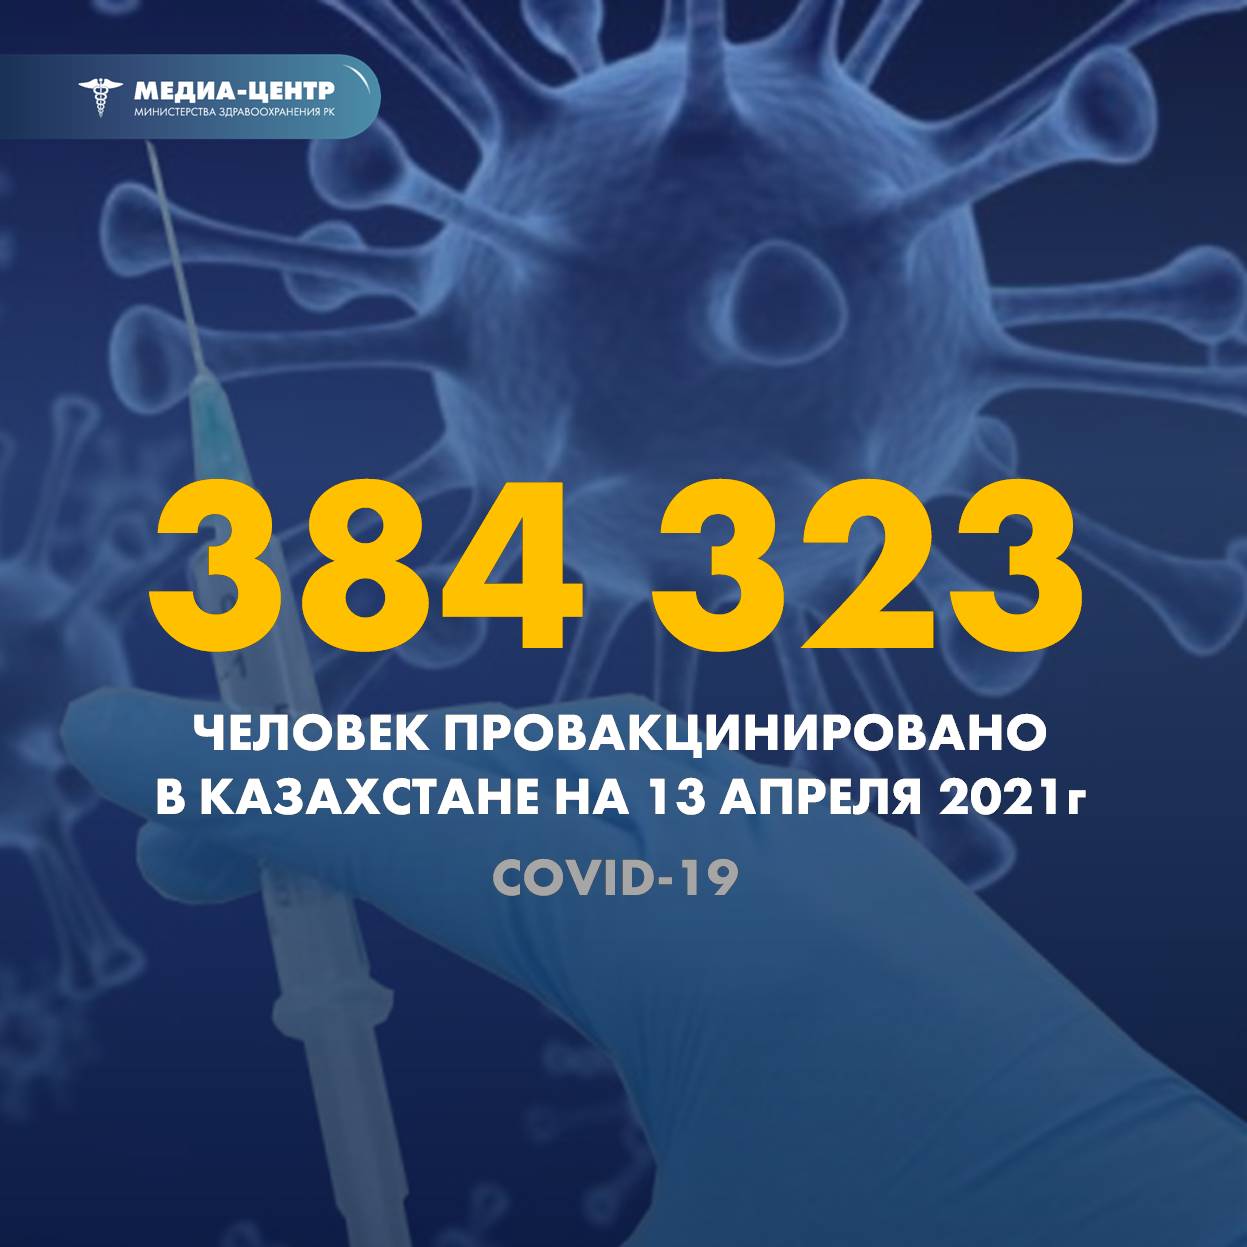 384 323 человек провакцинировано в Казахстане на 13 апреля 2021 г